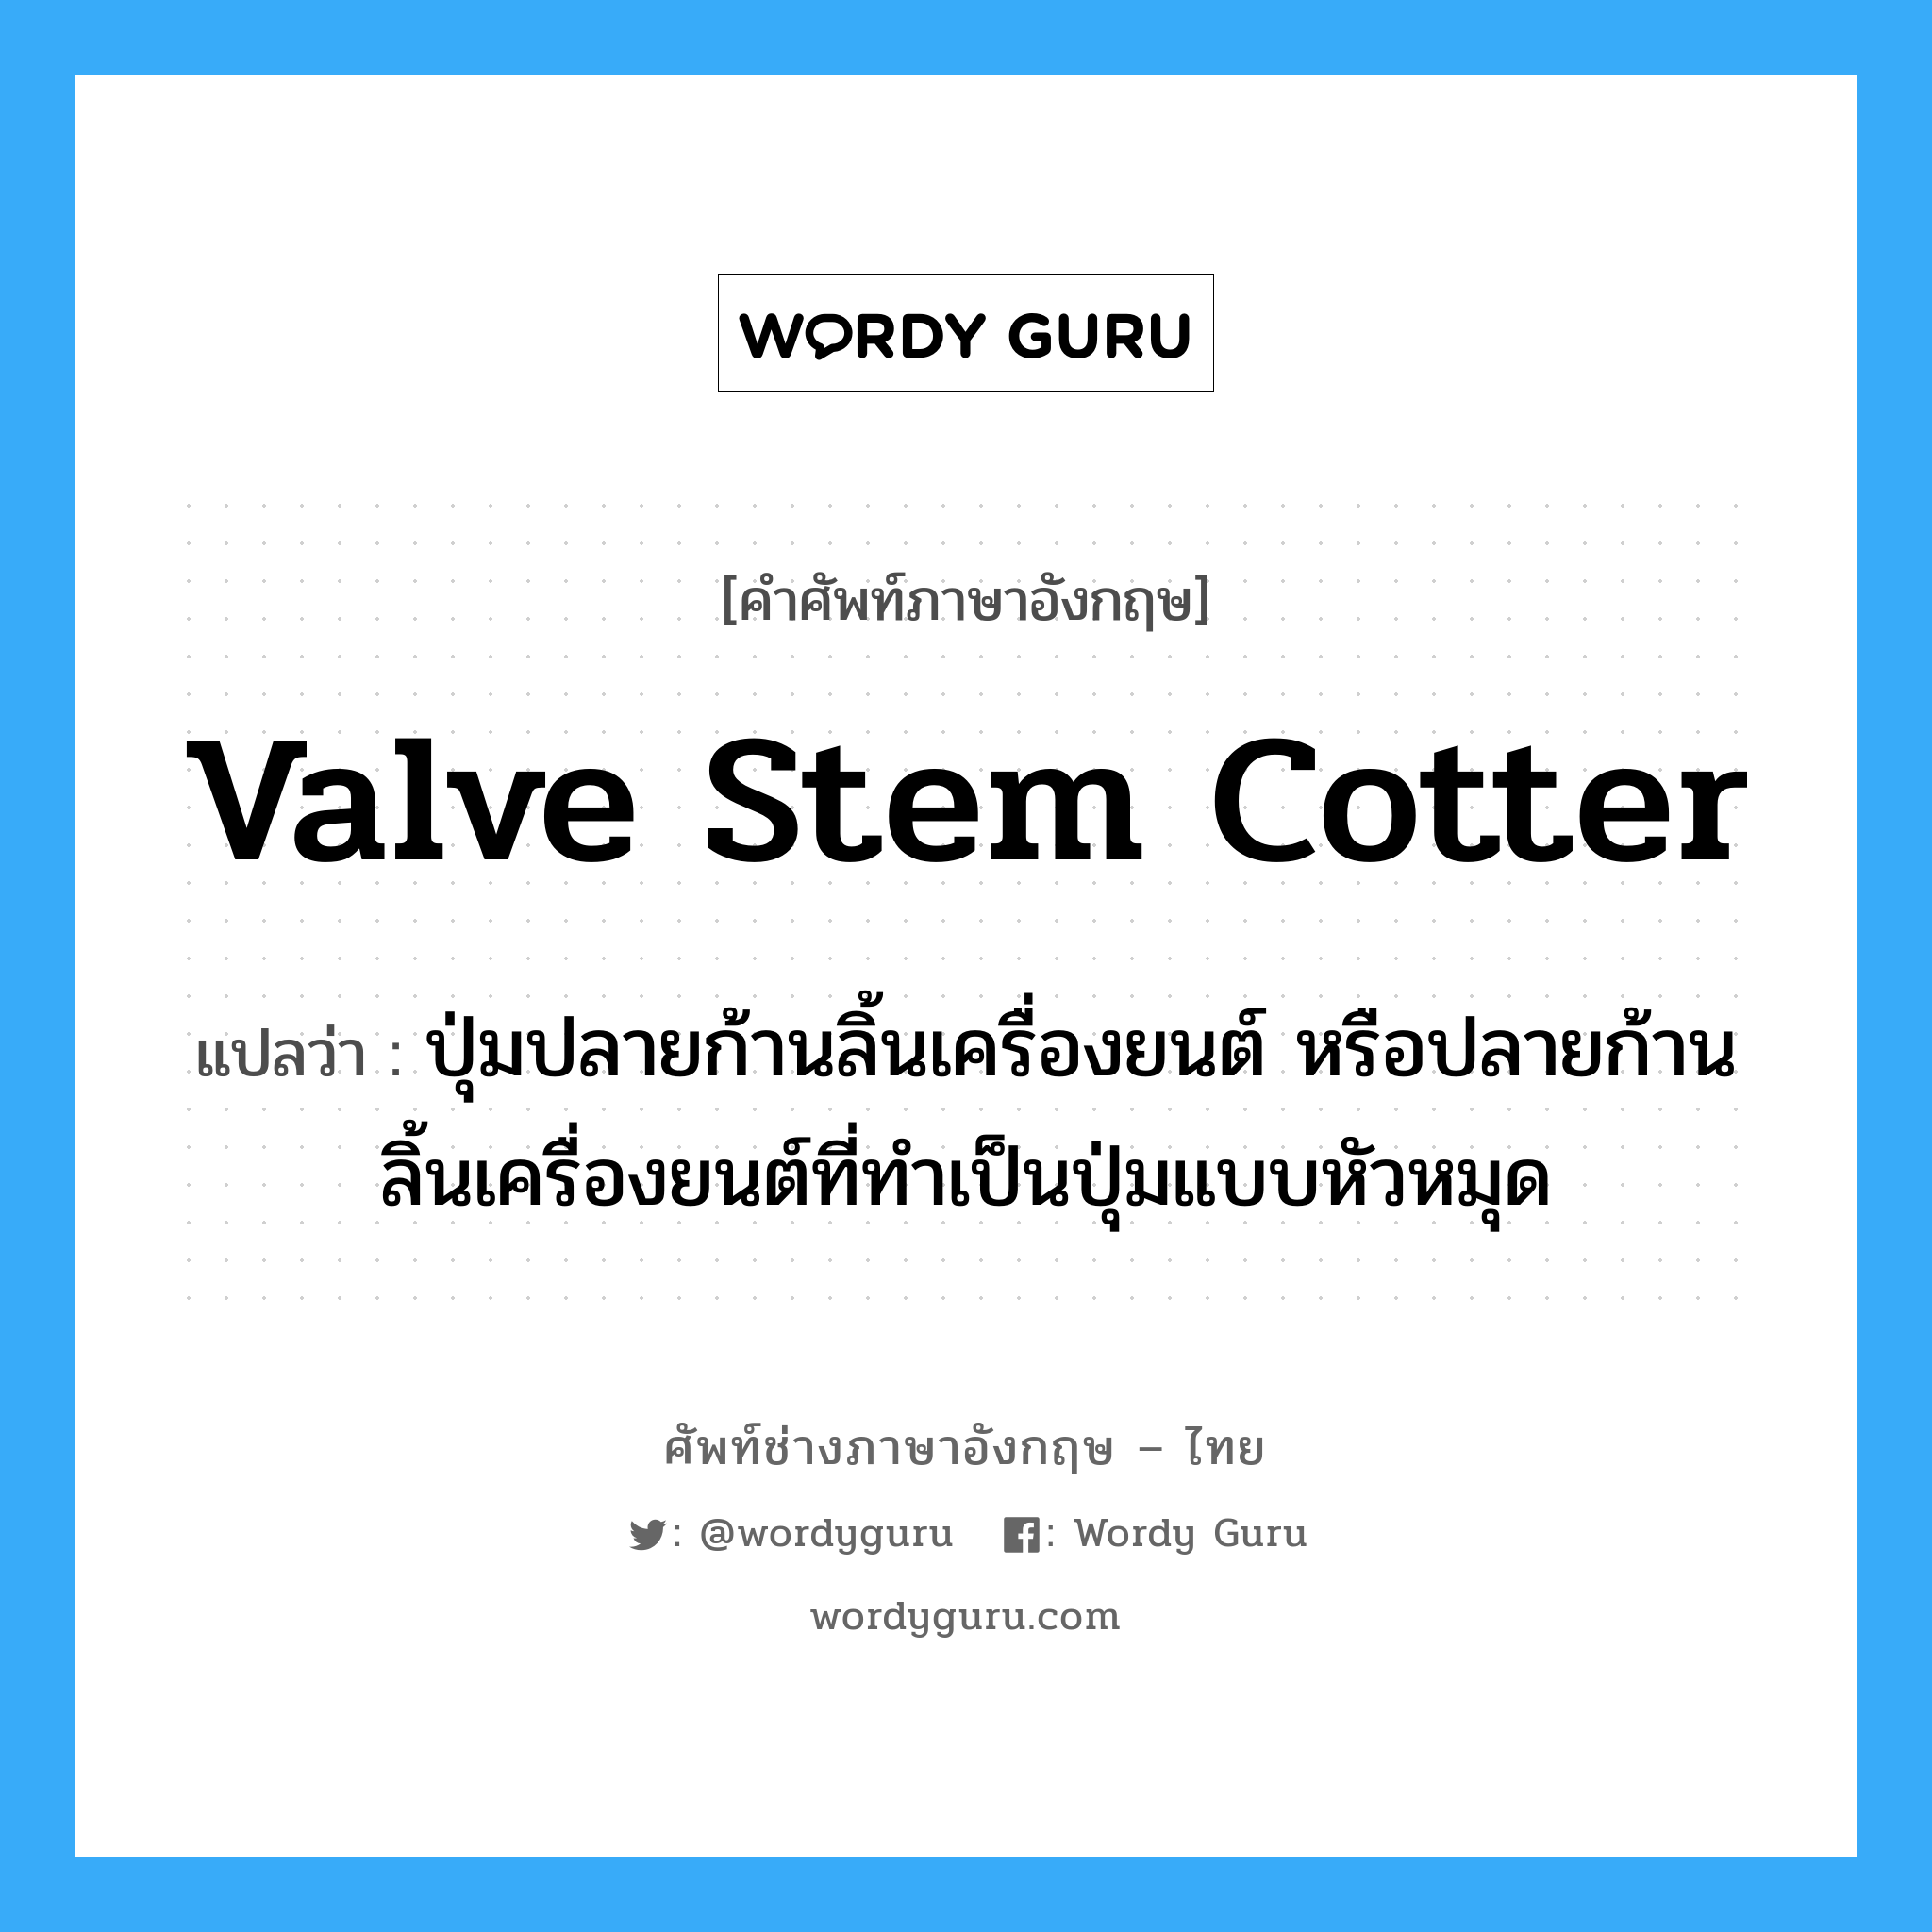 valve stem cotter แปลว่า?, คำศัพท์ช่างภาษาอังกฤษ - ไทย valve stem cotter คำศัพท์ภาษาอังกฤษ valve stem cotter แปลว่า ปุ่มปลายก้านลิ้นเครื่องยนต์ หรือปลายก้านลิ้นเครื่องยนต์ที่ทำเป็นปุ่มแบบหัวหมุด